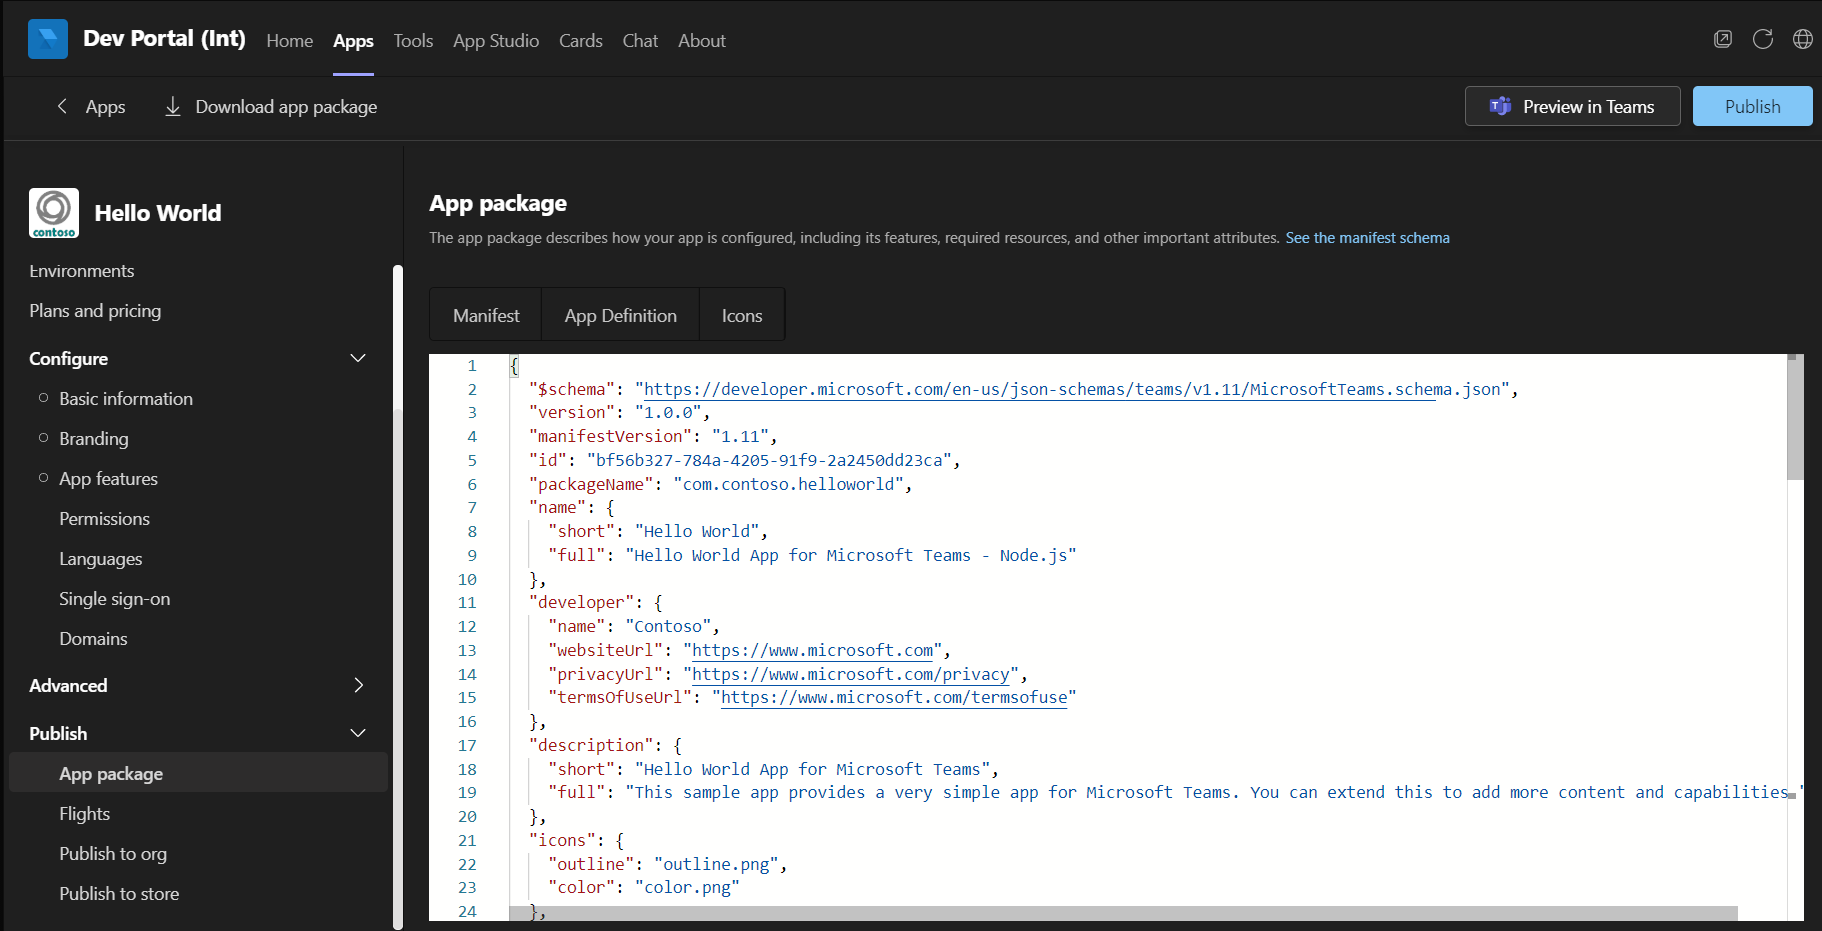 Captura de tela da imagem mostrando o arquivo de manifesto do aplicativo no Portal do Desenvolvedor.